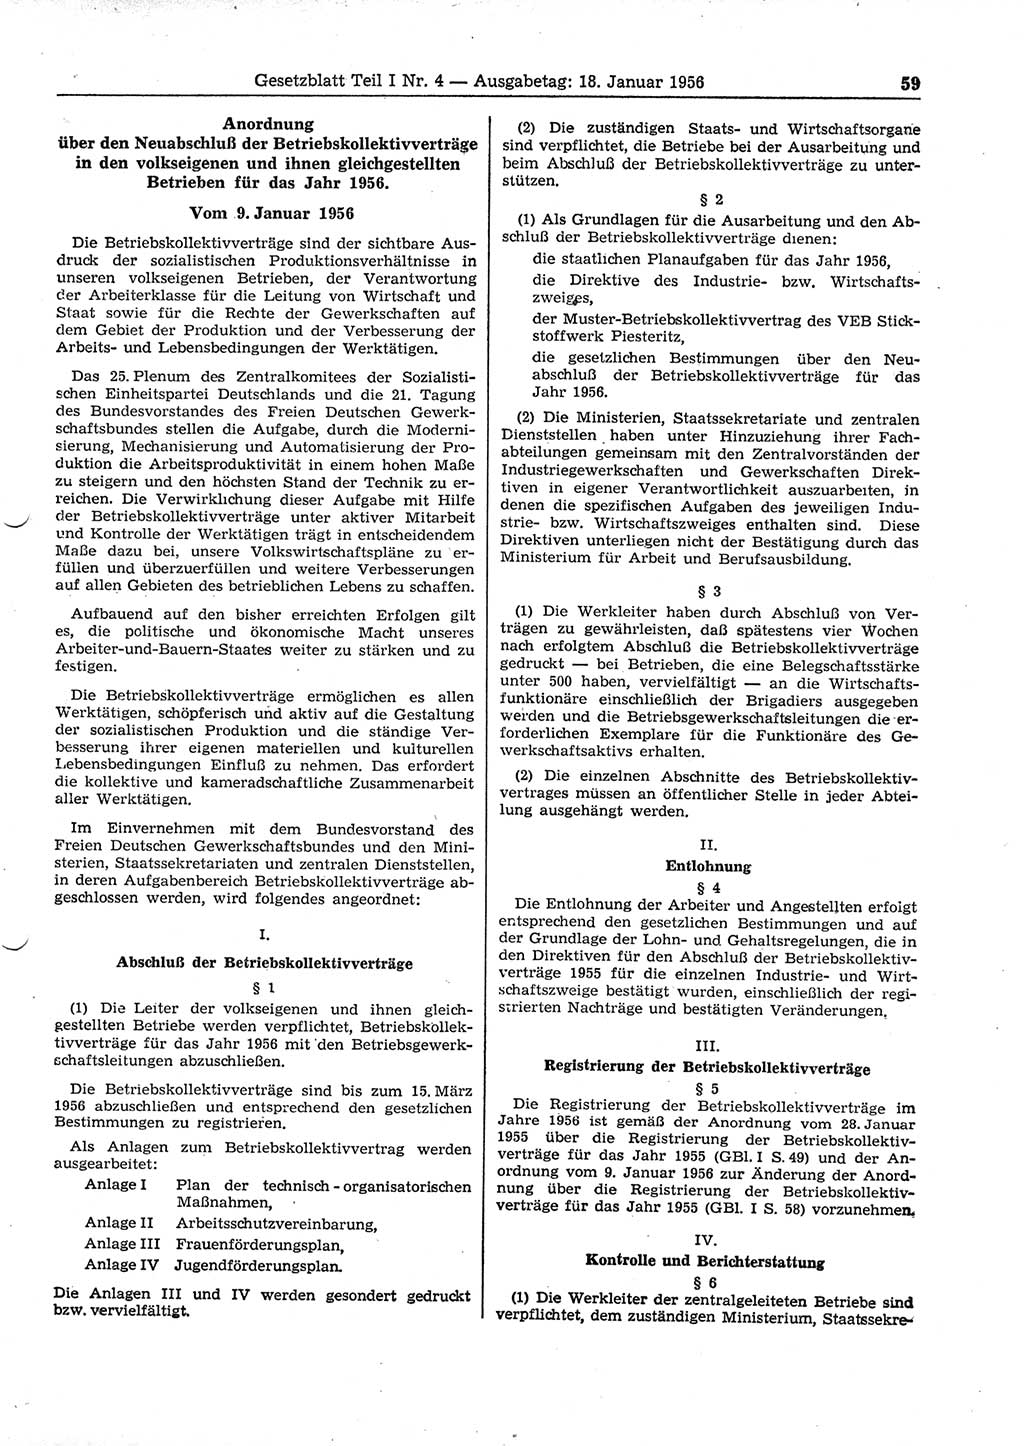 Gesetzblatt (GBl.) der Deutschen Demokratischen Republik (DDR) Teil Ⅰ 1956, Seite 59 (GBl. DDR Ⅰ 1956, S. 59)